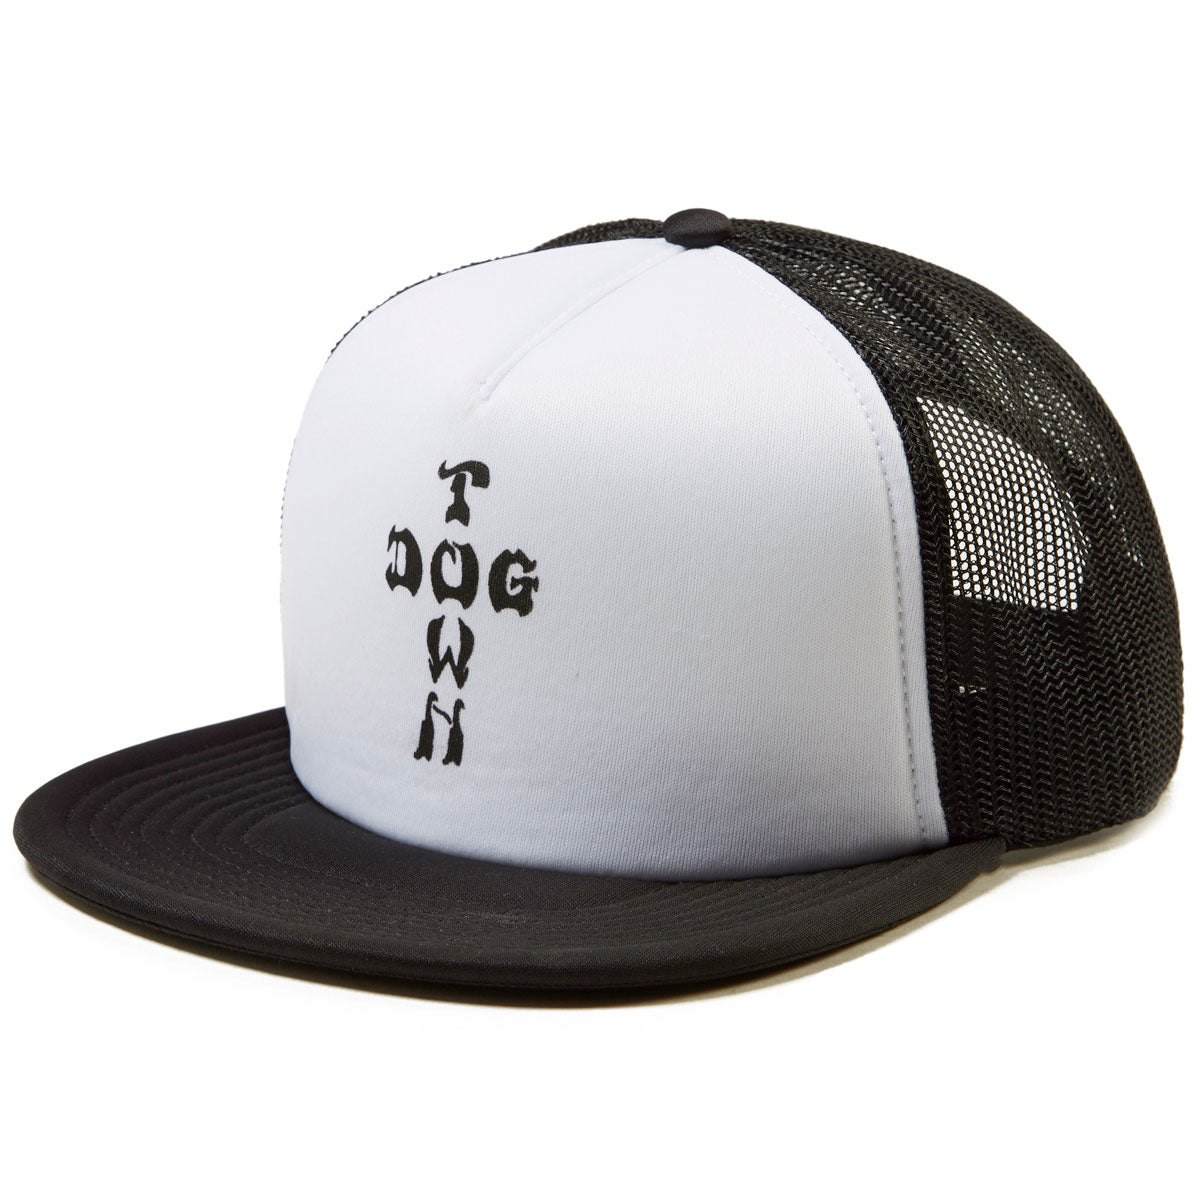 Dogtown Cross Letter Mesh Flip Hat - Black/White image 1